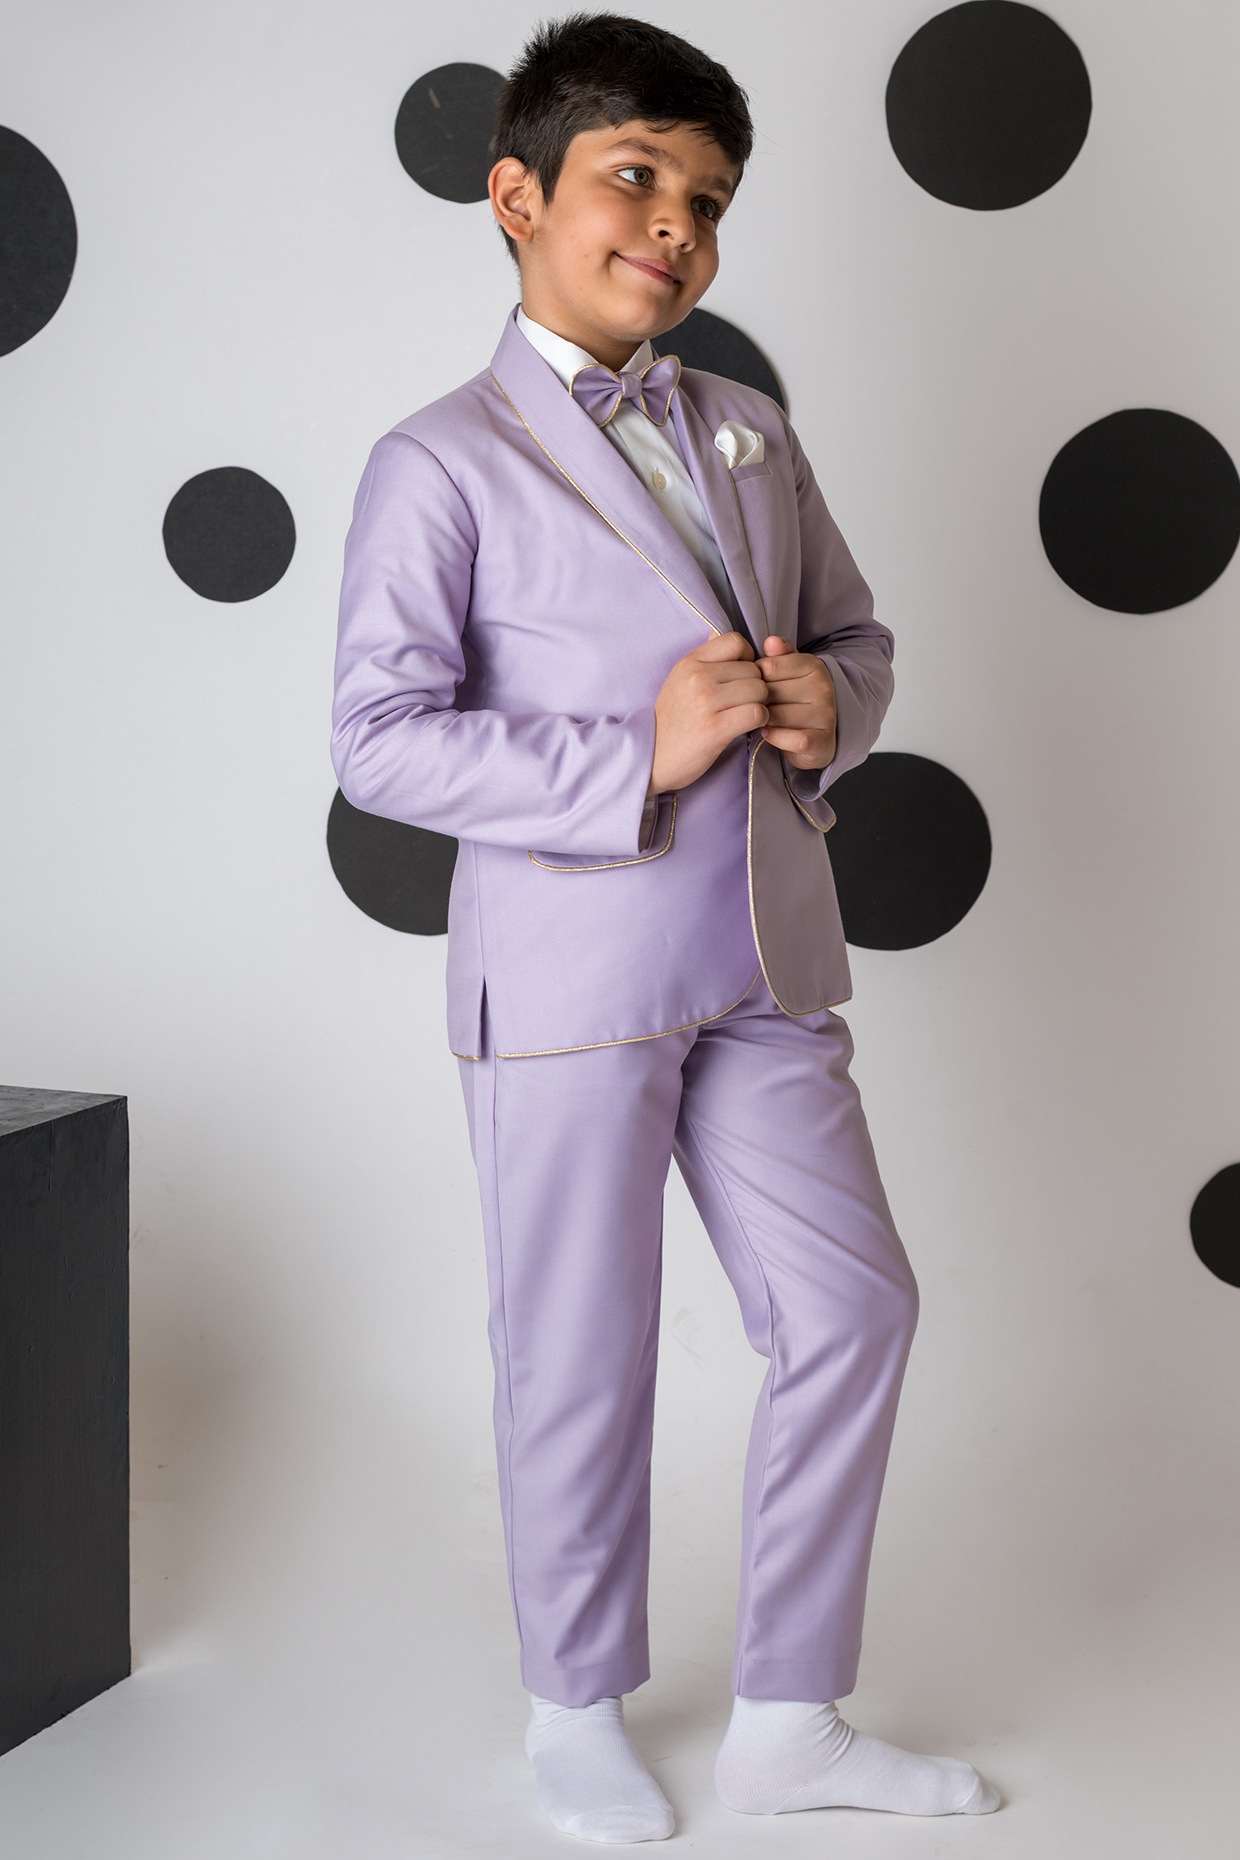 The Classic Suit Formal Boys Suit – JuniorKids